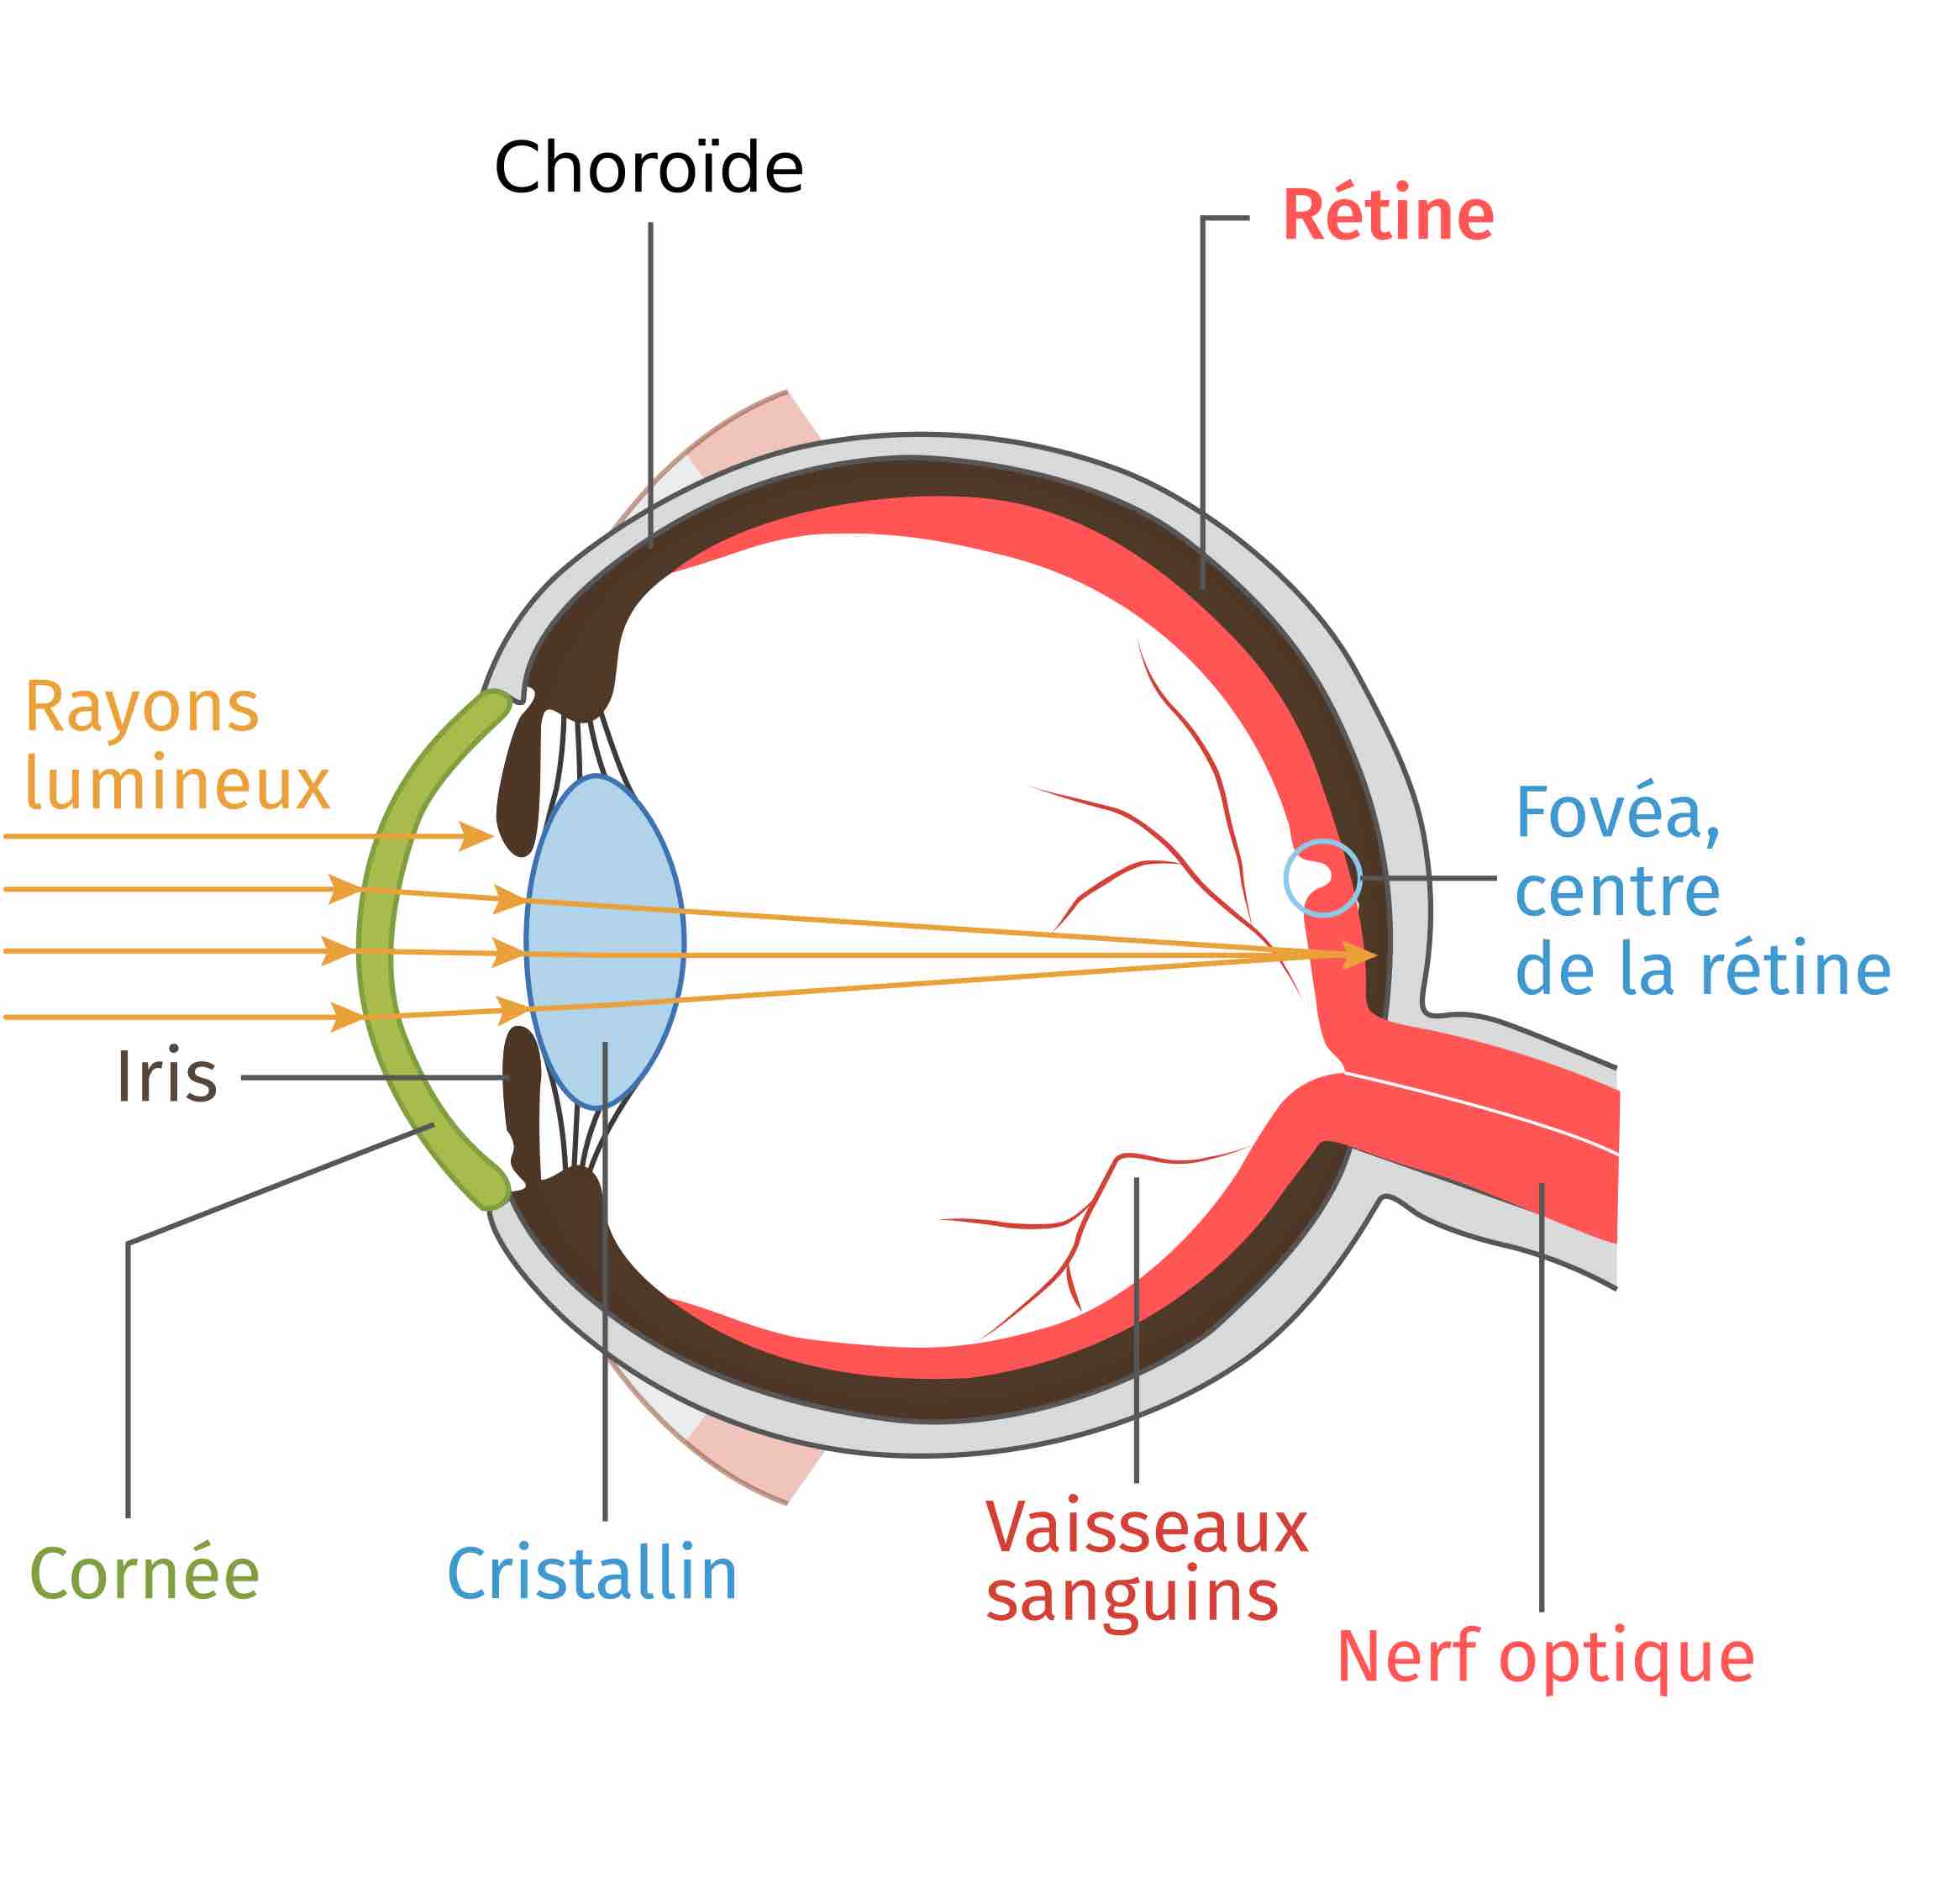 Schéma de l'oeil où sont annotés les rayons lumineux, l'iris, la cornée, le cristallin, les vaisseaux sanguins, le nerf optique, la fovéa c'est-à-dire le centre de la rétine, la rétine et la choroïde.